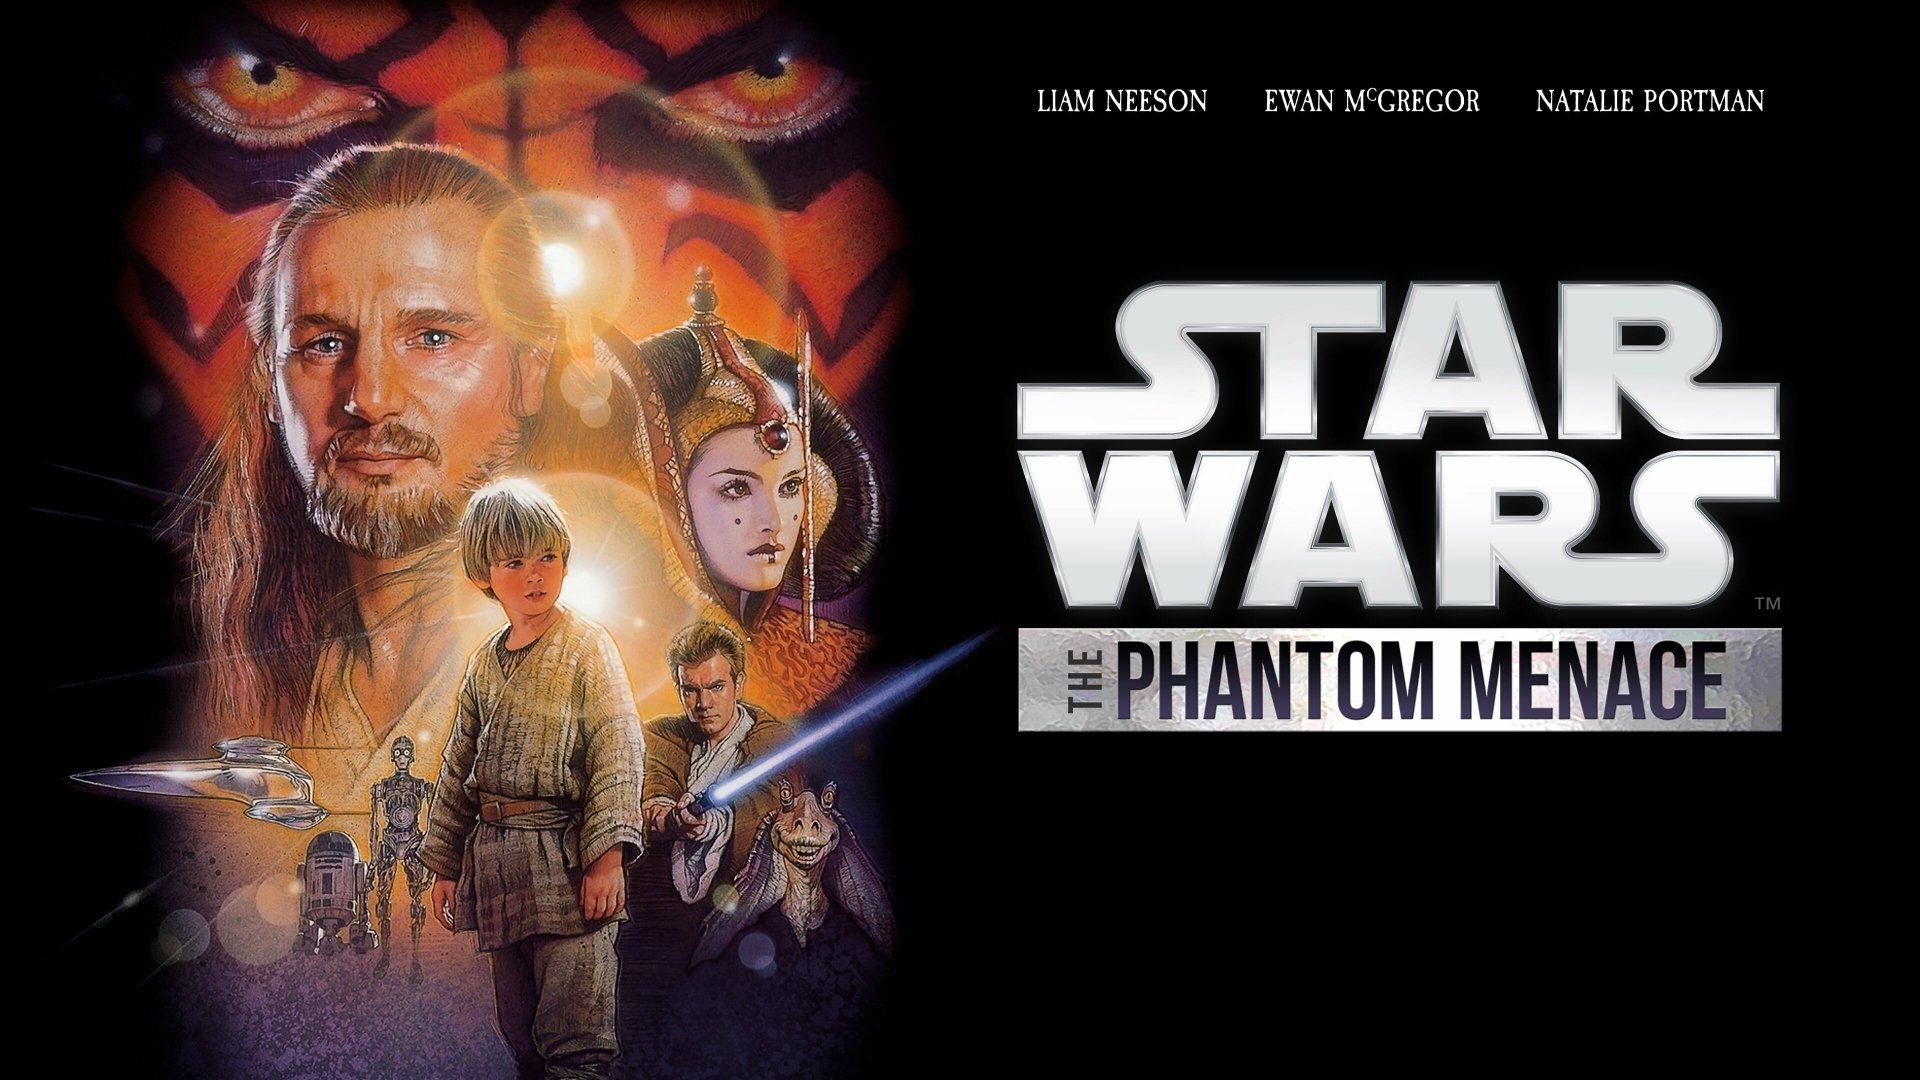 star wars episode 1 the phantom menace pc game free download